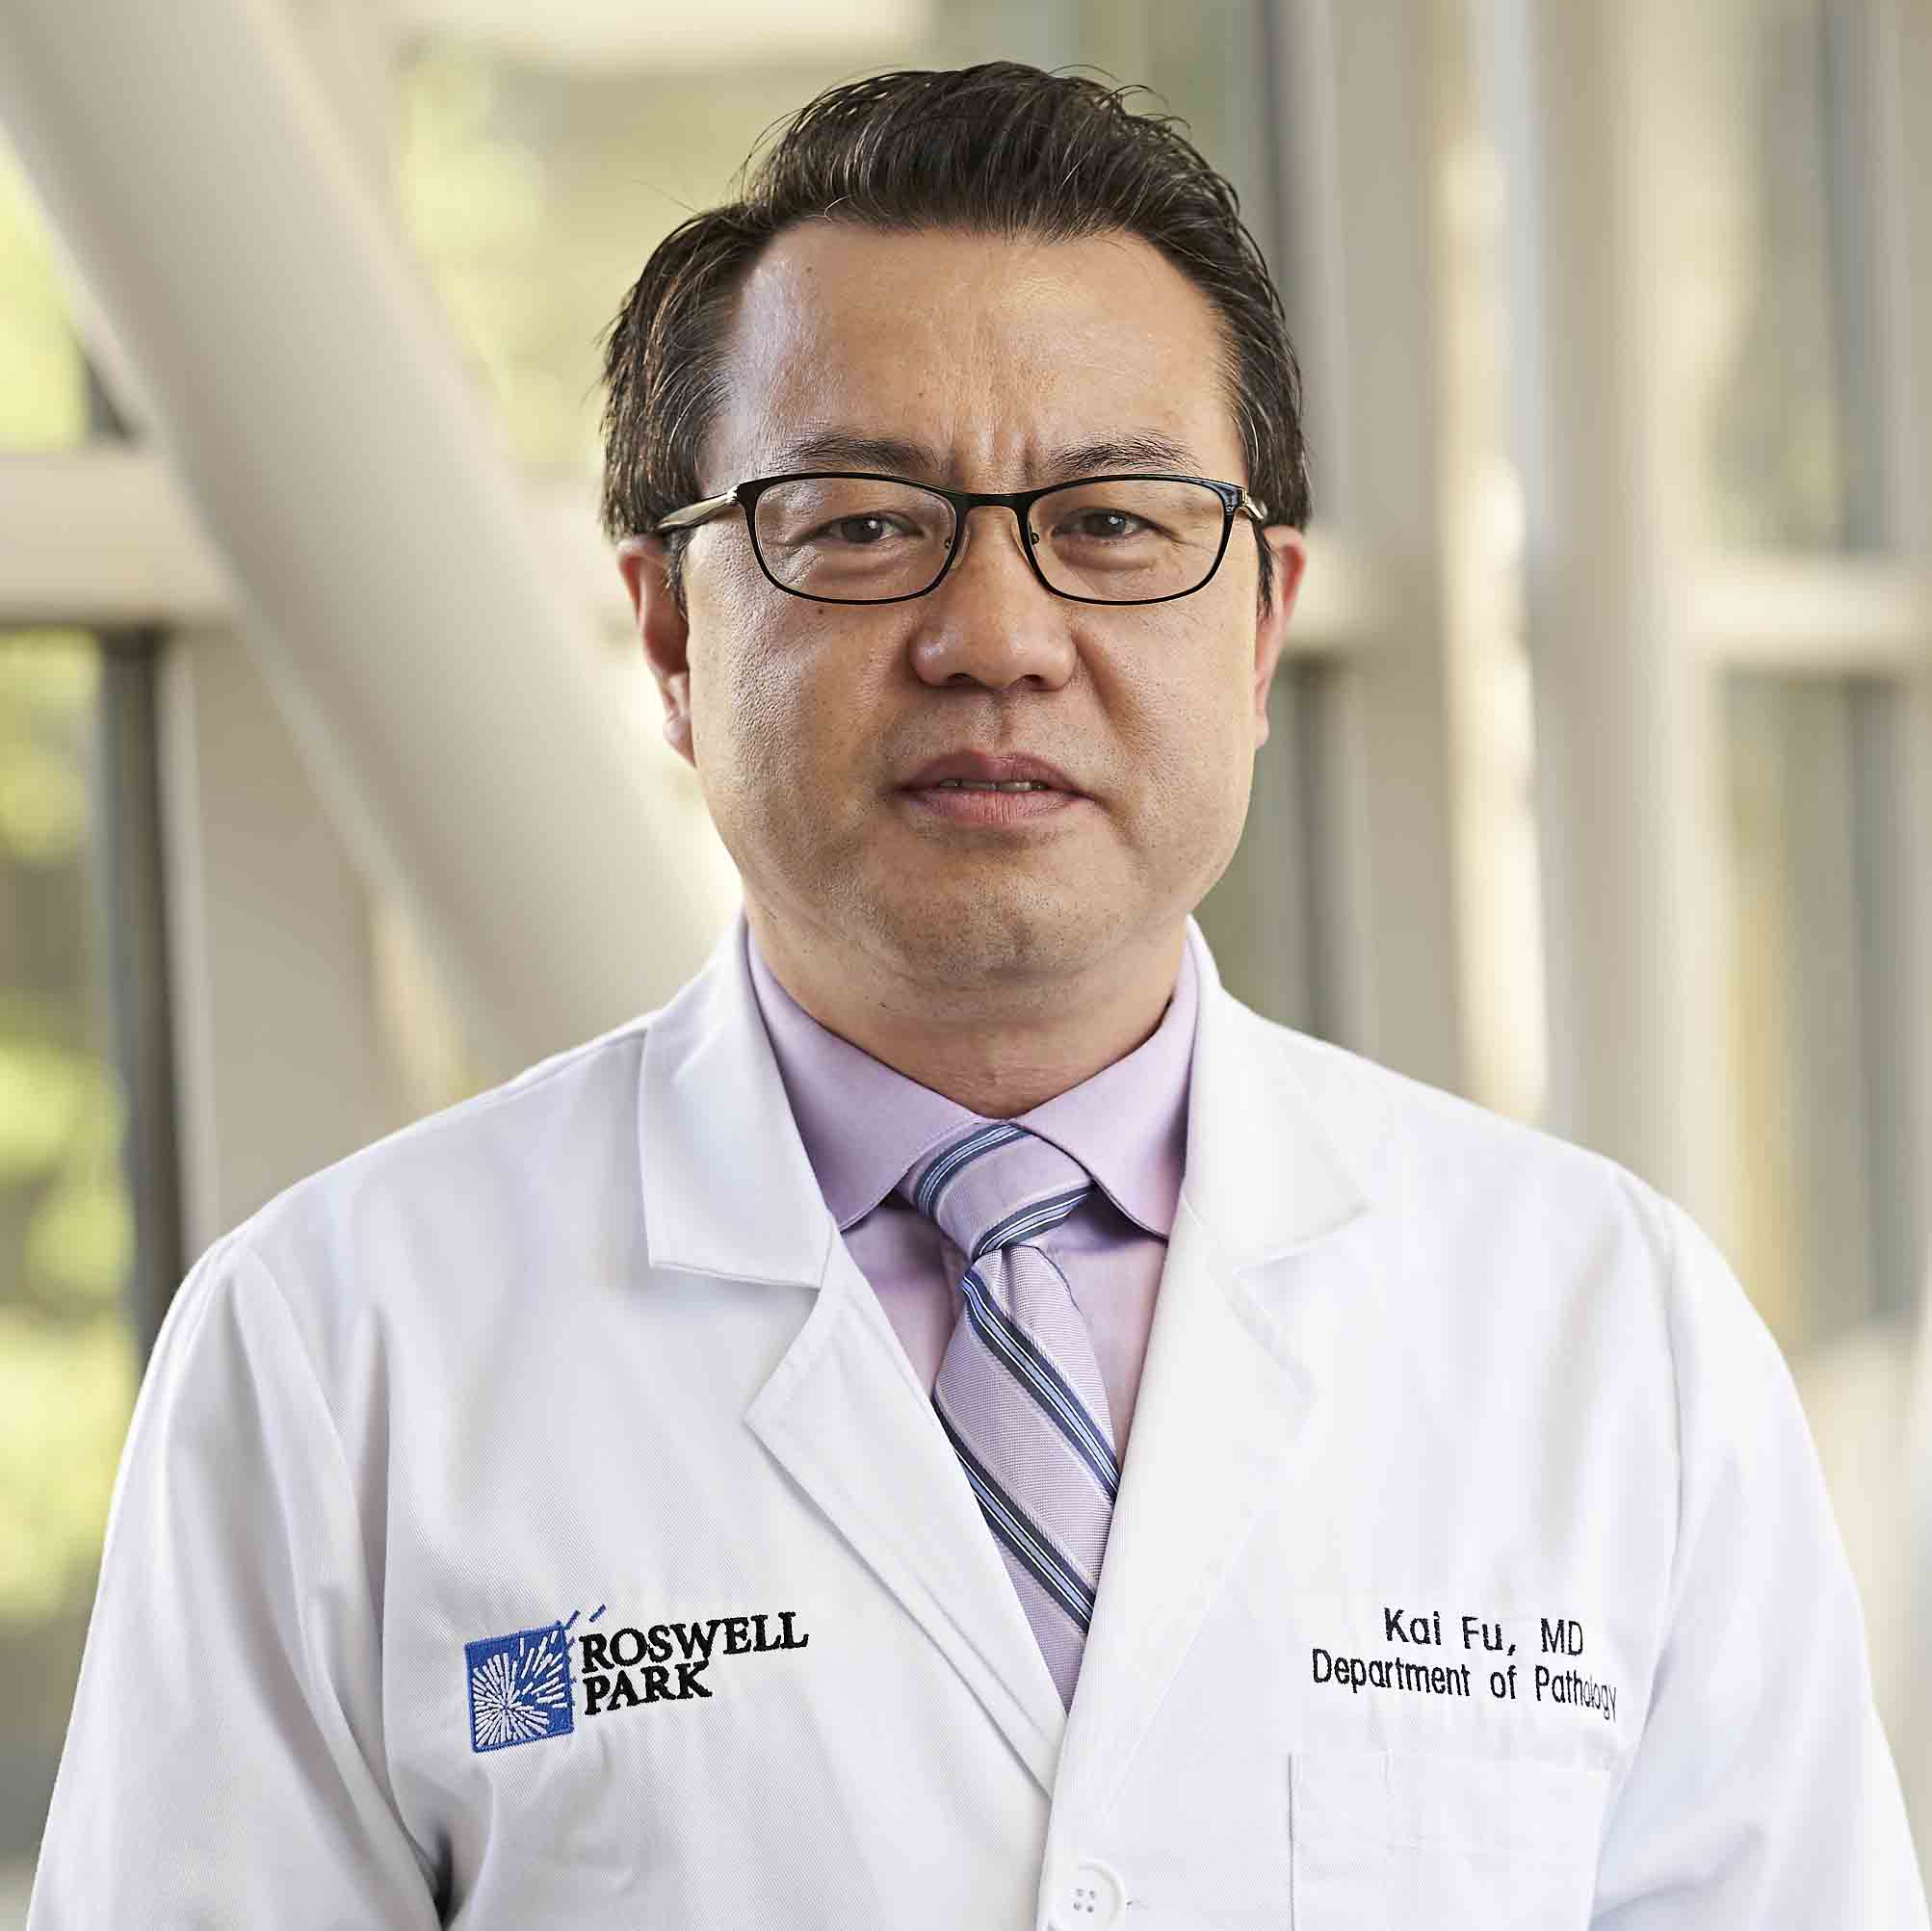 Dr. Kai Fu's headshot